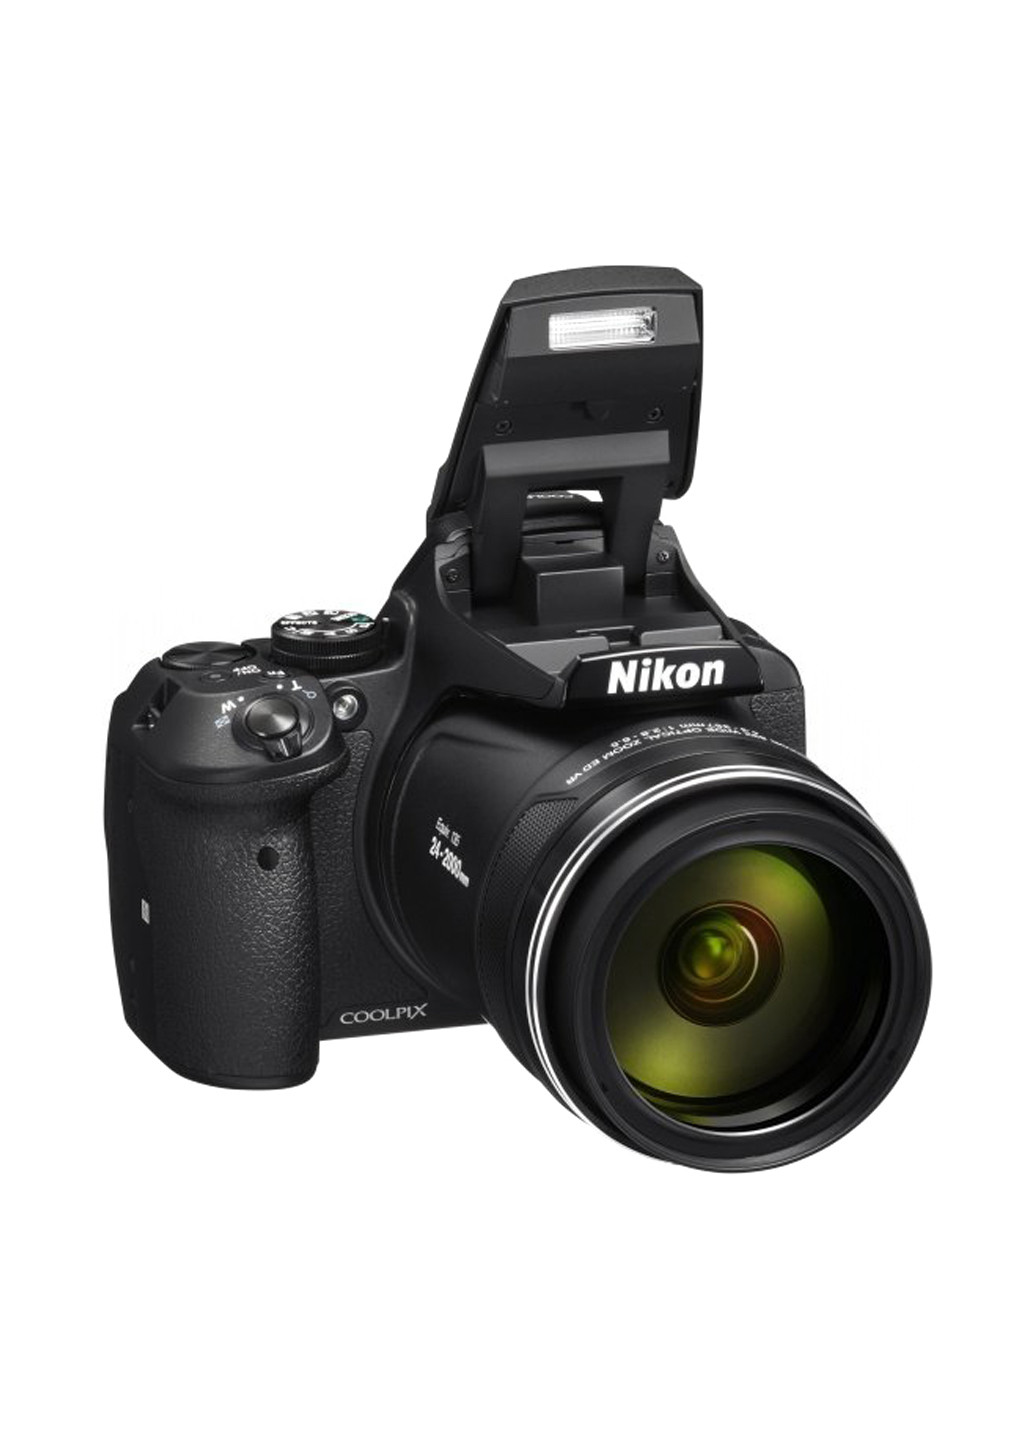 Компактная фотокамера Nikon coolpix p900 black (132999713)